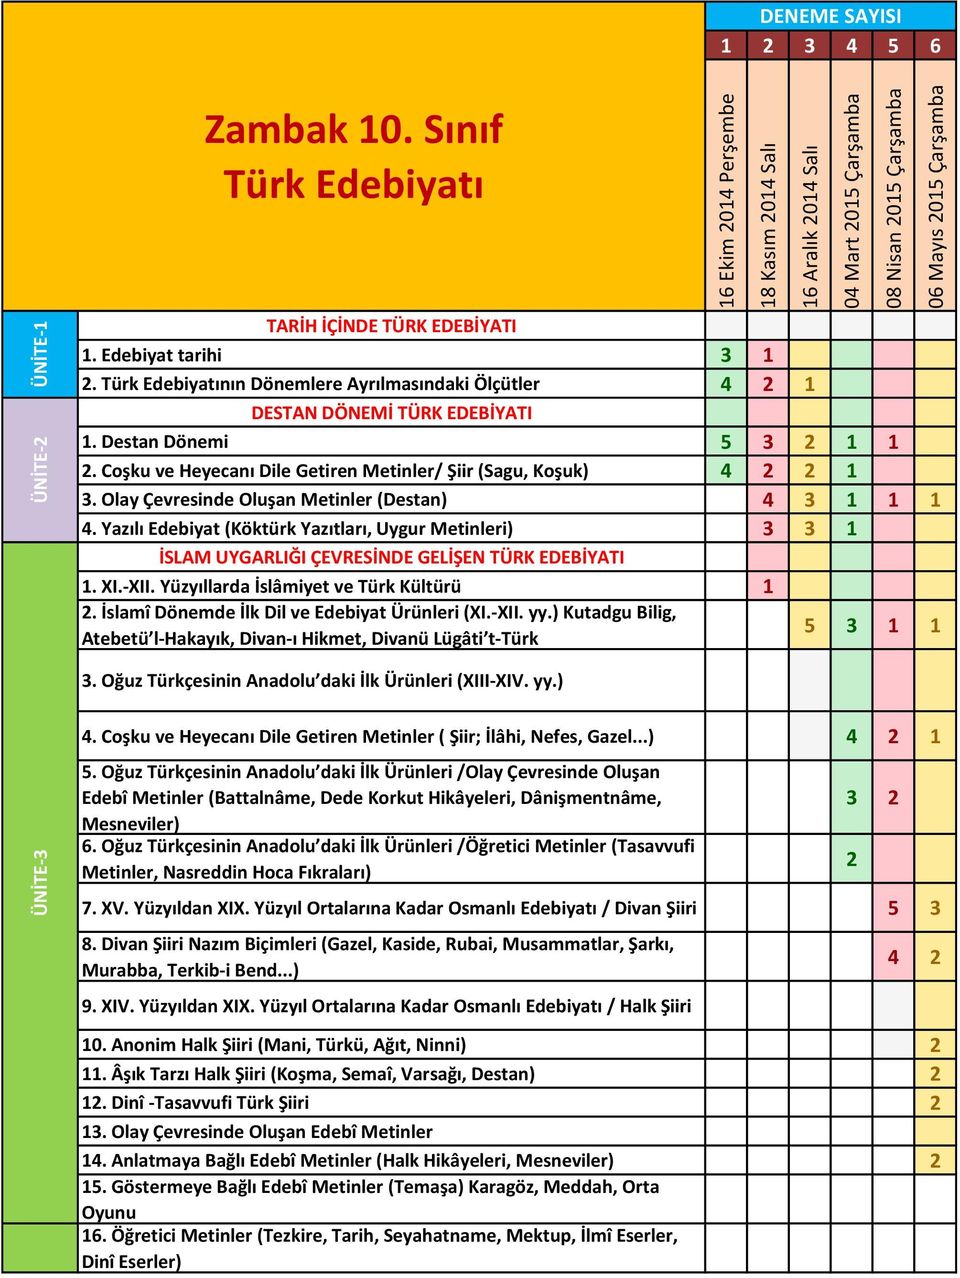 Yazılı Edebiyat (Köktürk Yazıtları, Uygur Metinleri) 3 3 1 İSLAM UYGARLIĞI ÇEVRESİNDE GELİŞEN TÜRK EDEBİYATI 1. XI.-XII. Yüzyıllarda İslâmiyet ve Türk Kültürü 1 2.